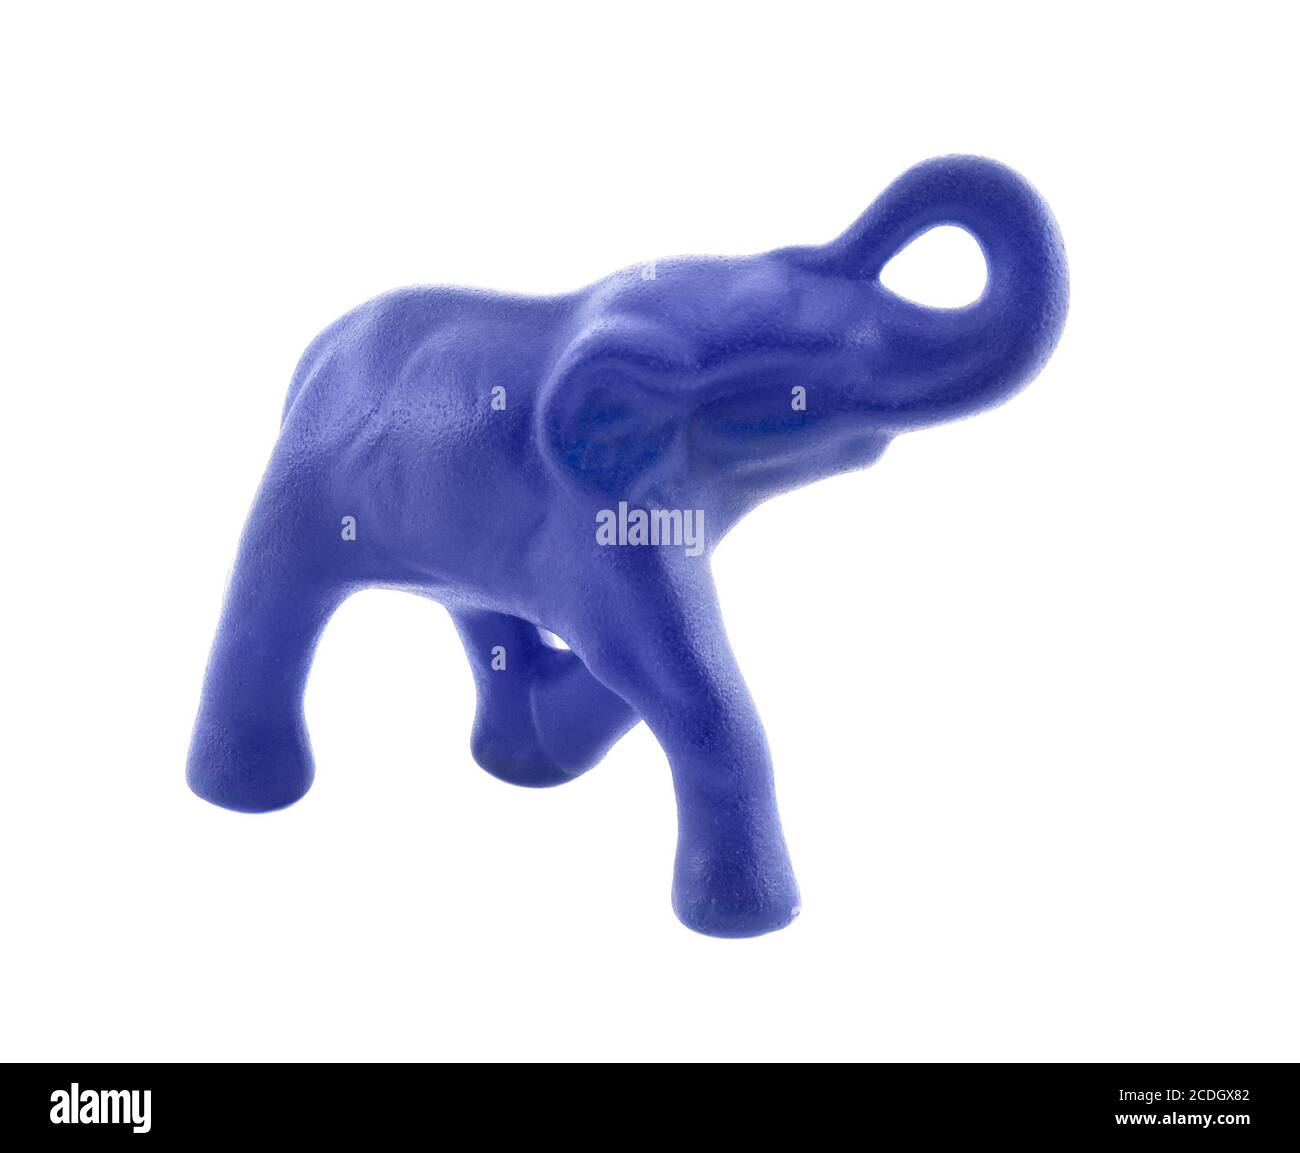 Figurine d'un éléphant bleu isolé sur fond blanc Banque D'Images